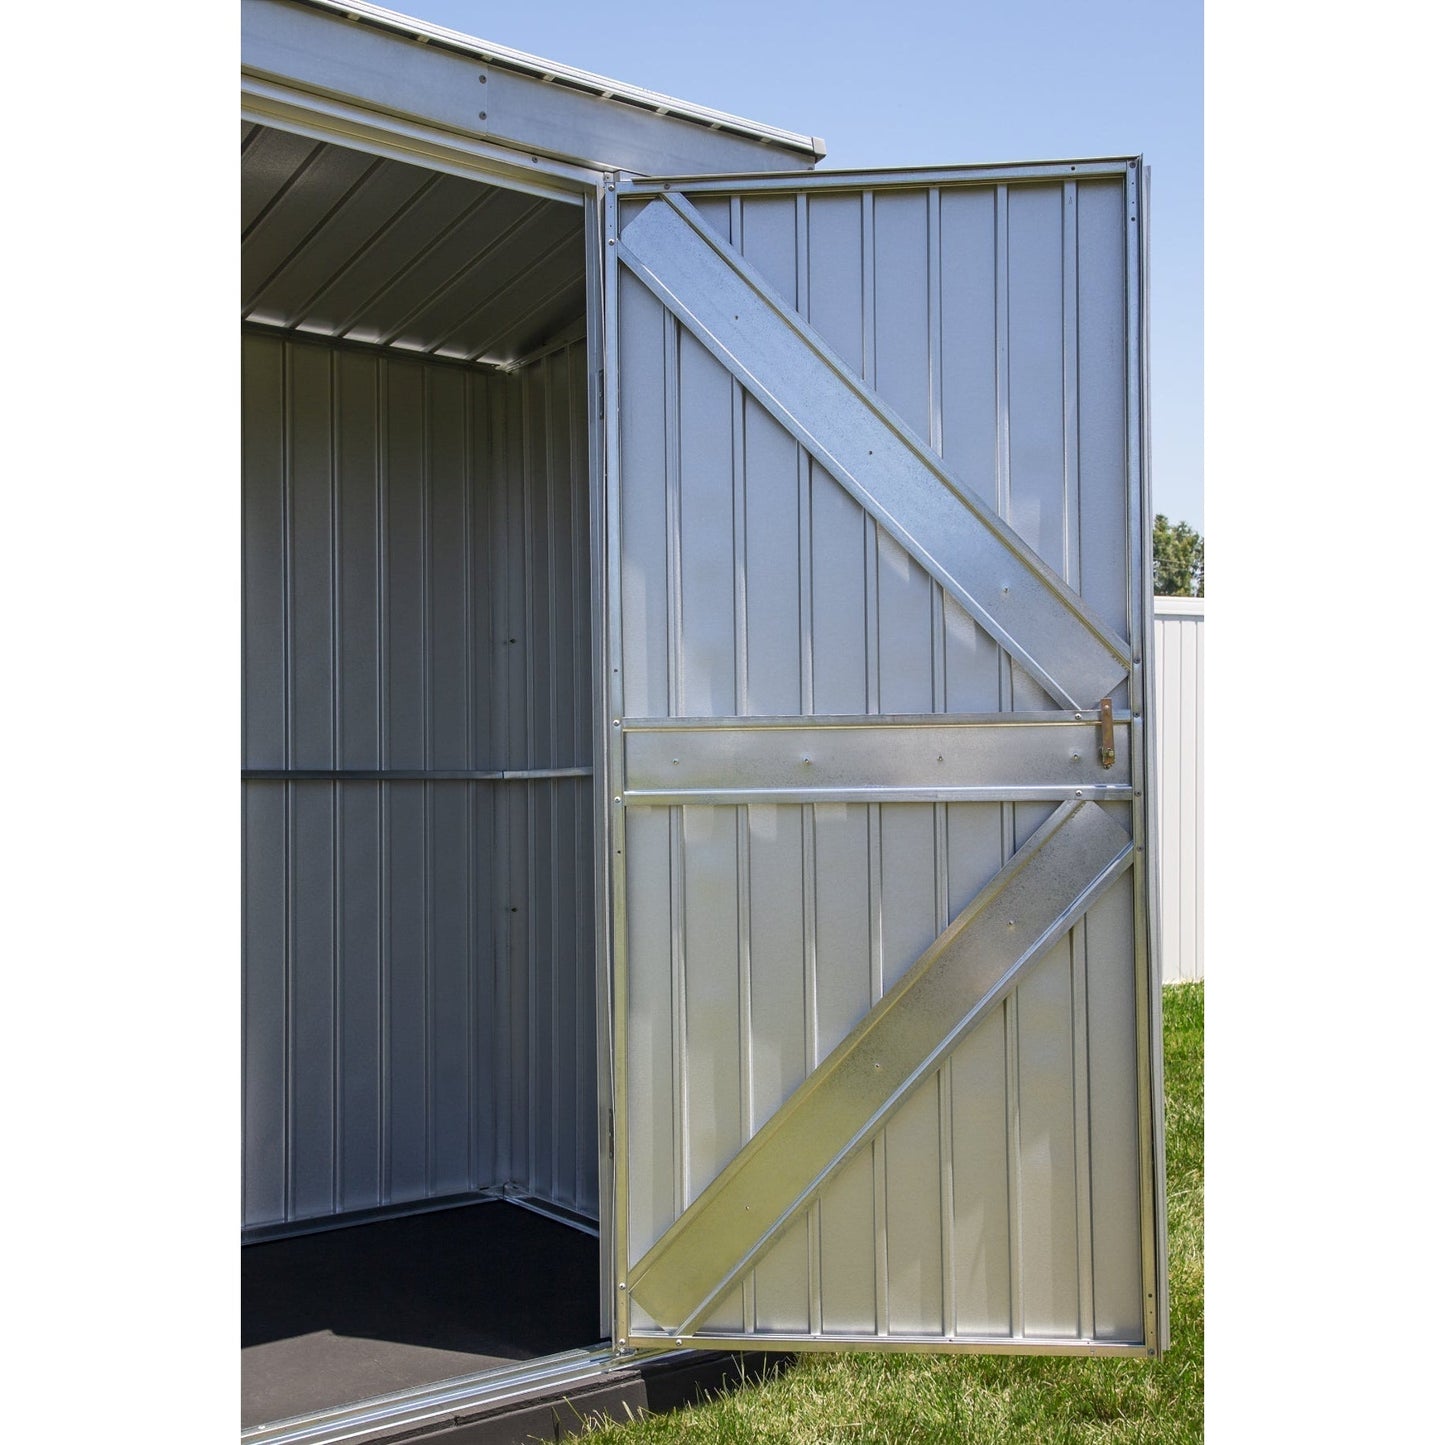 Arrow Elite Steel Storage Shed 14 x 16 ft.-Delightful Yard